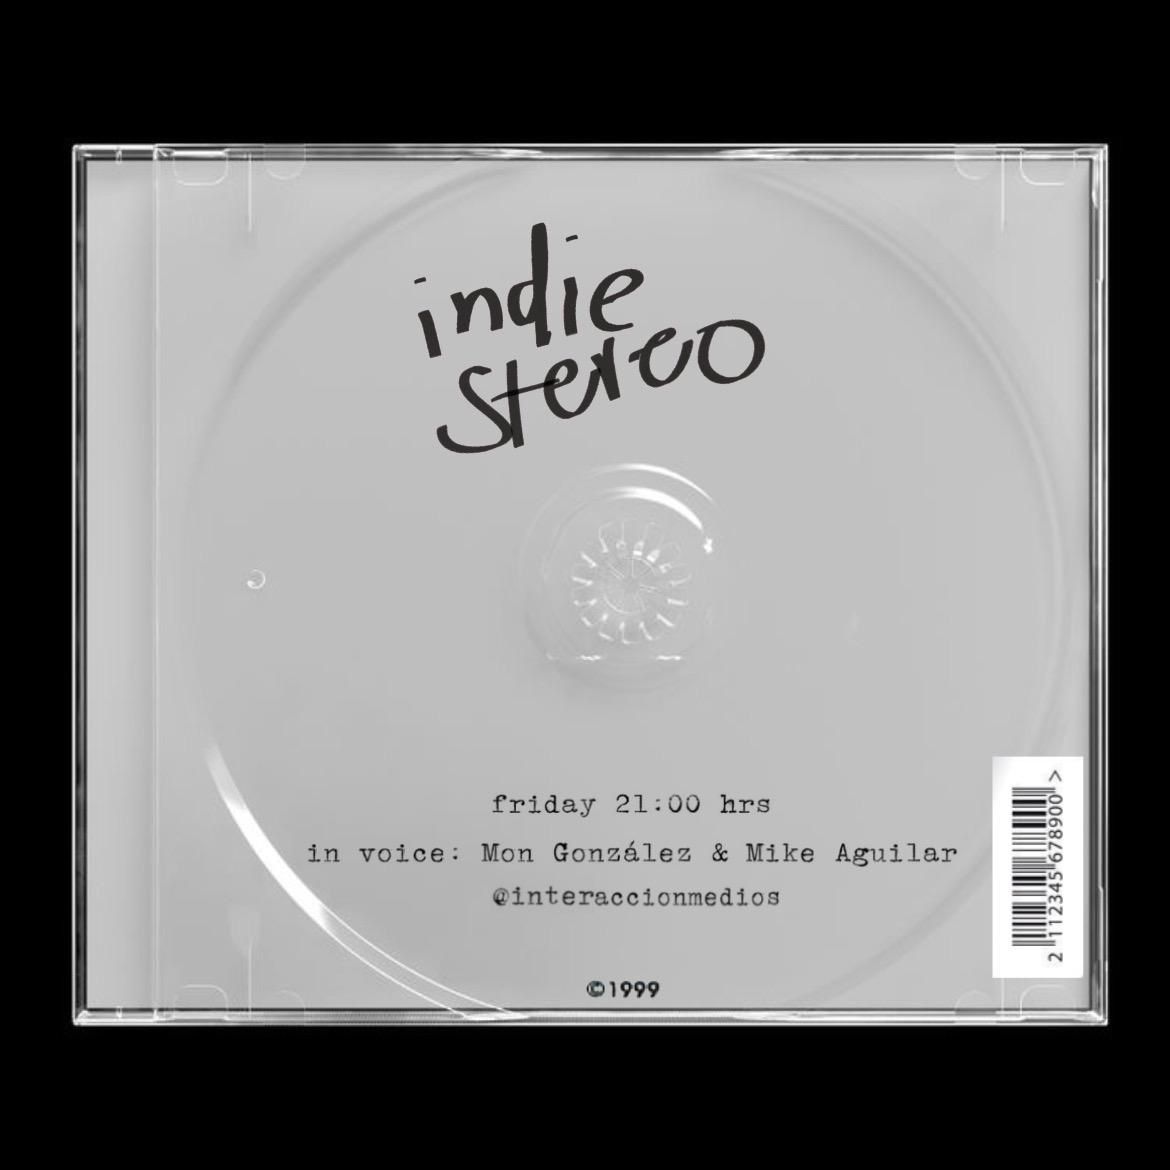 Caratula de Indie Stereo